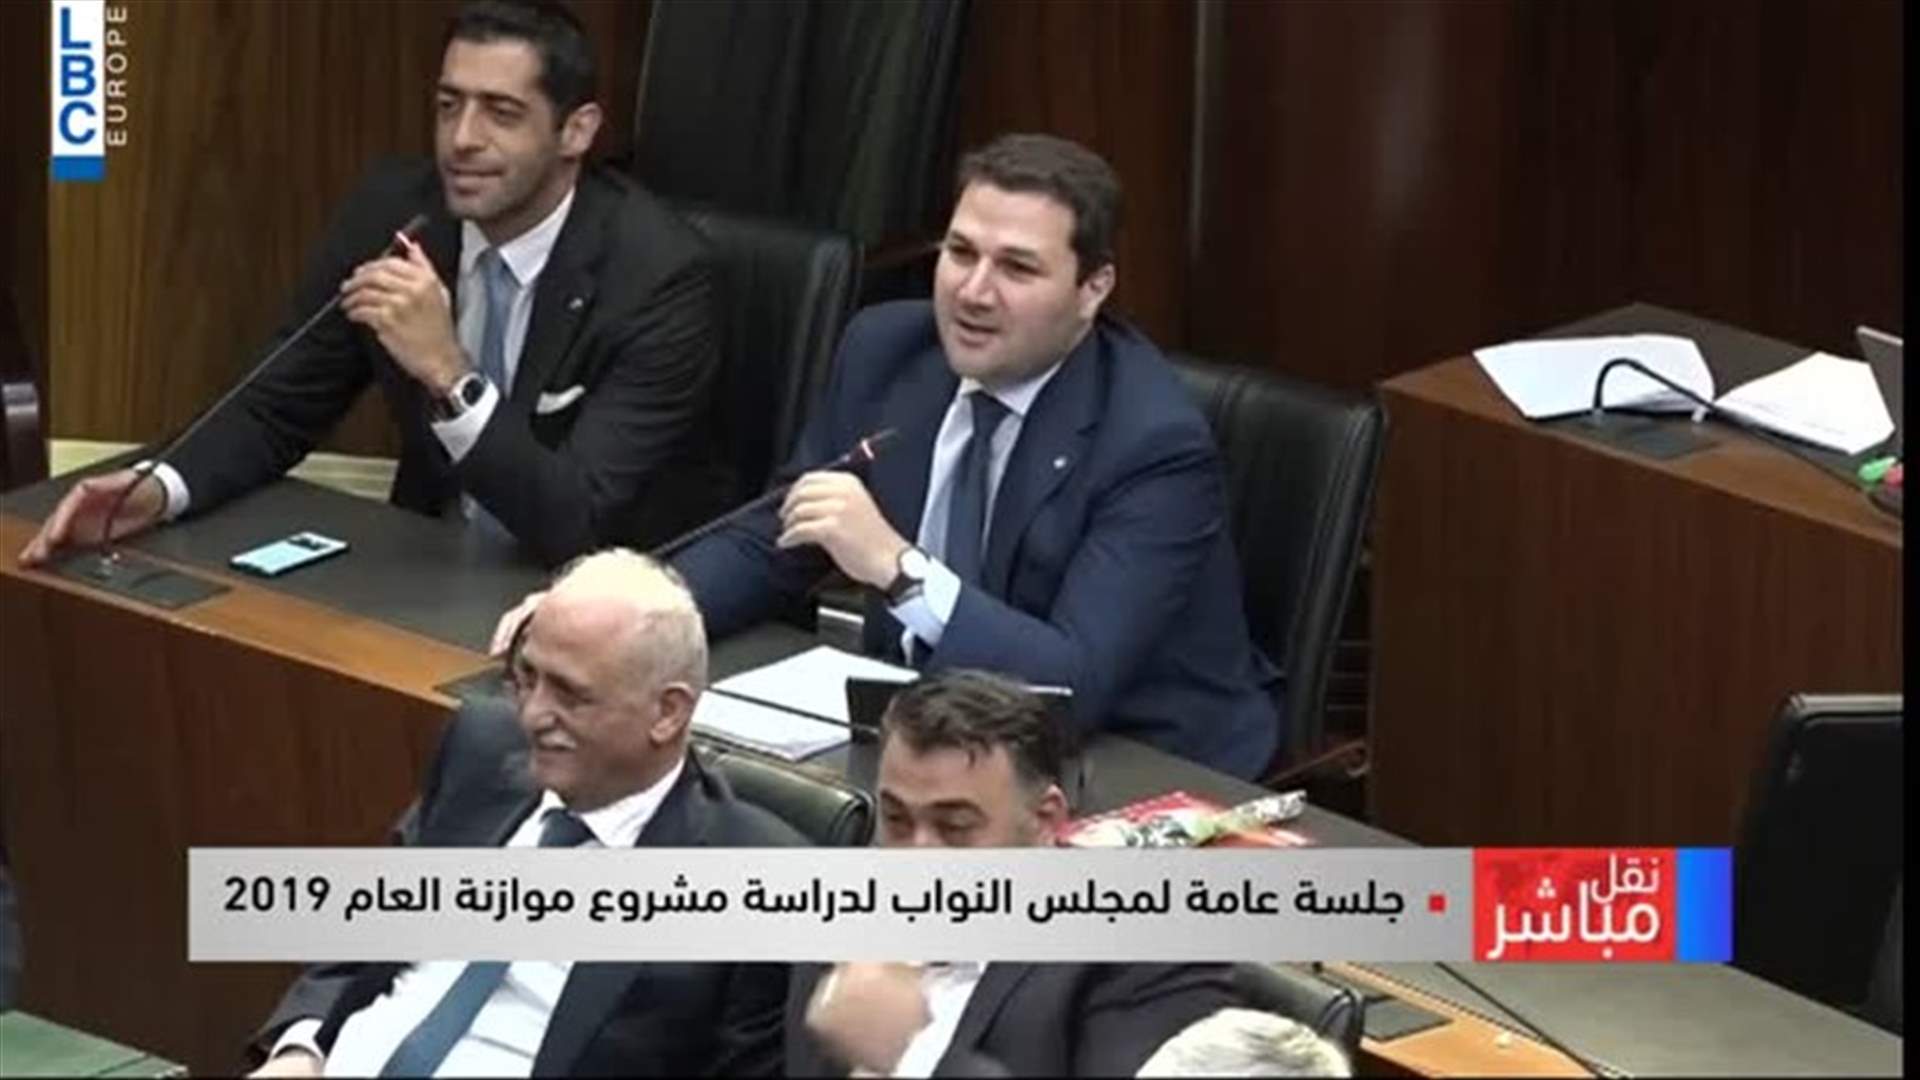 سجال حاد في مجلس النواب... سليم عون لنديم الجميل: &quot;يلي خلّف مات وشبع موت&quot; (فيديو)